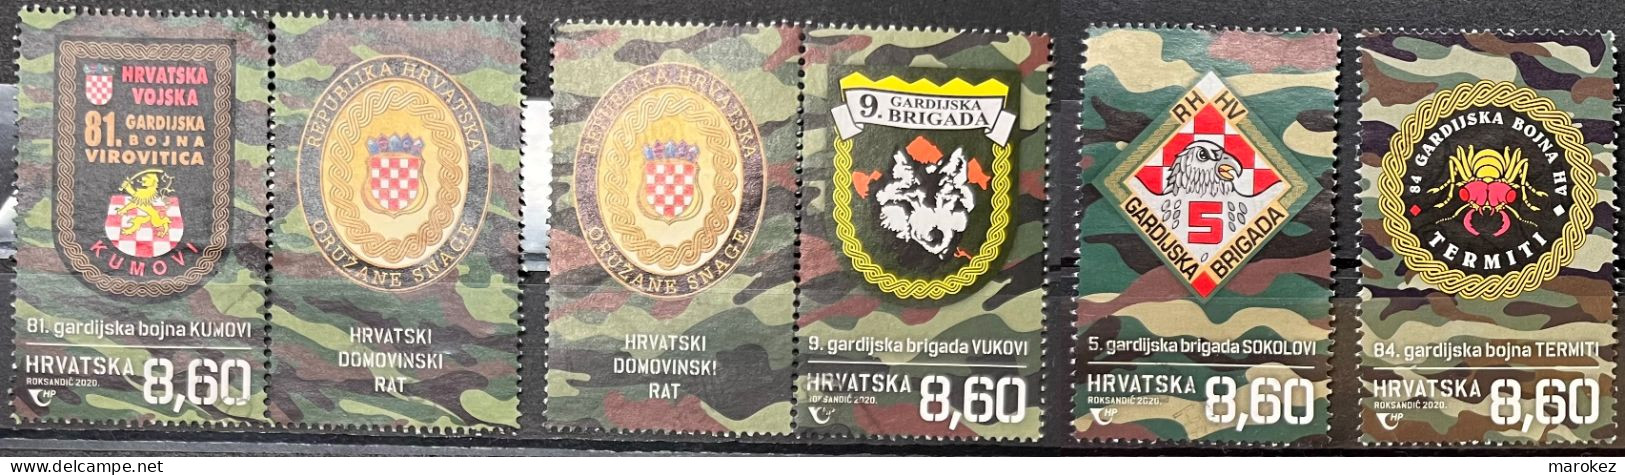 CROATIA 2020 Croatian War - Guard Brigades And Guard Battalions Postally Used Set MICHEL # 1454,1455,1456,1457 - Kroatien